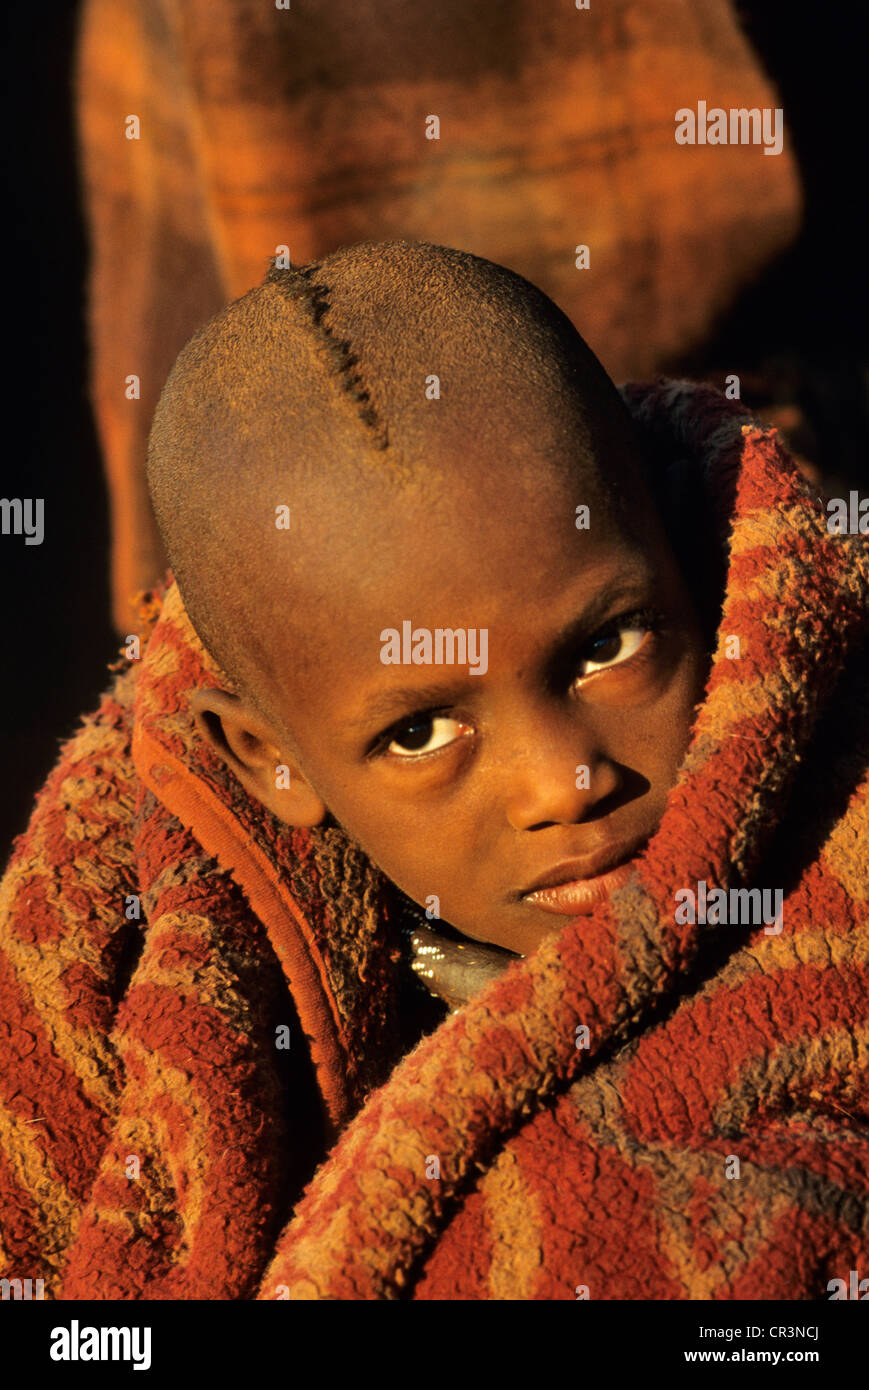 La Namibia, Regione di Kunene, Kaokoland, ritratto di Himba bambino Foto Stock